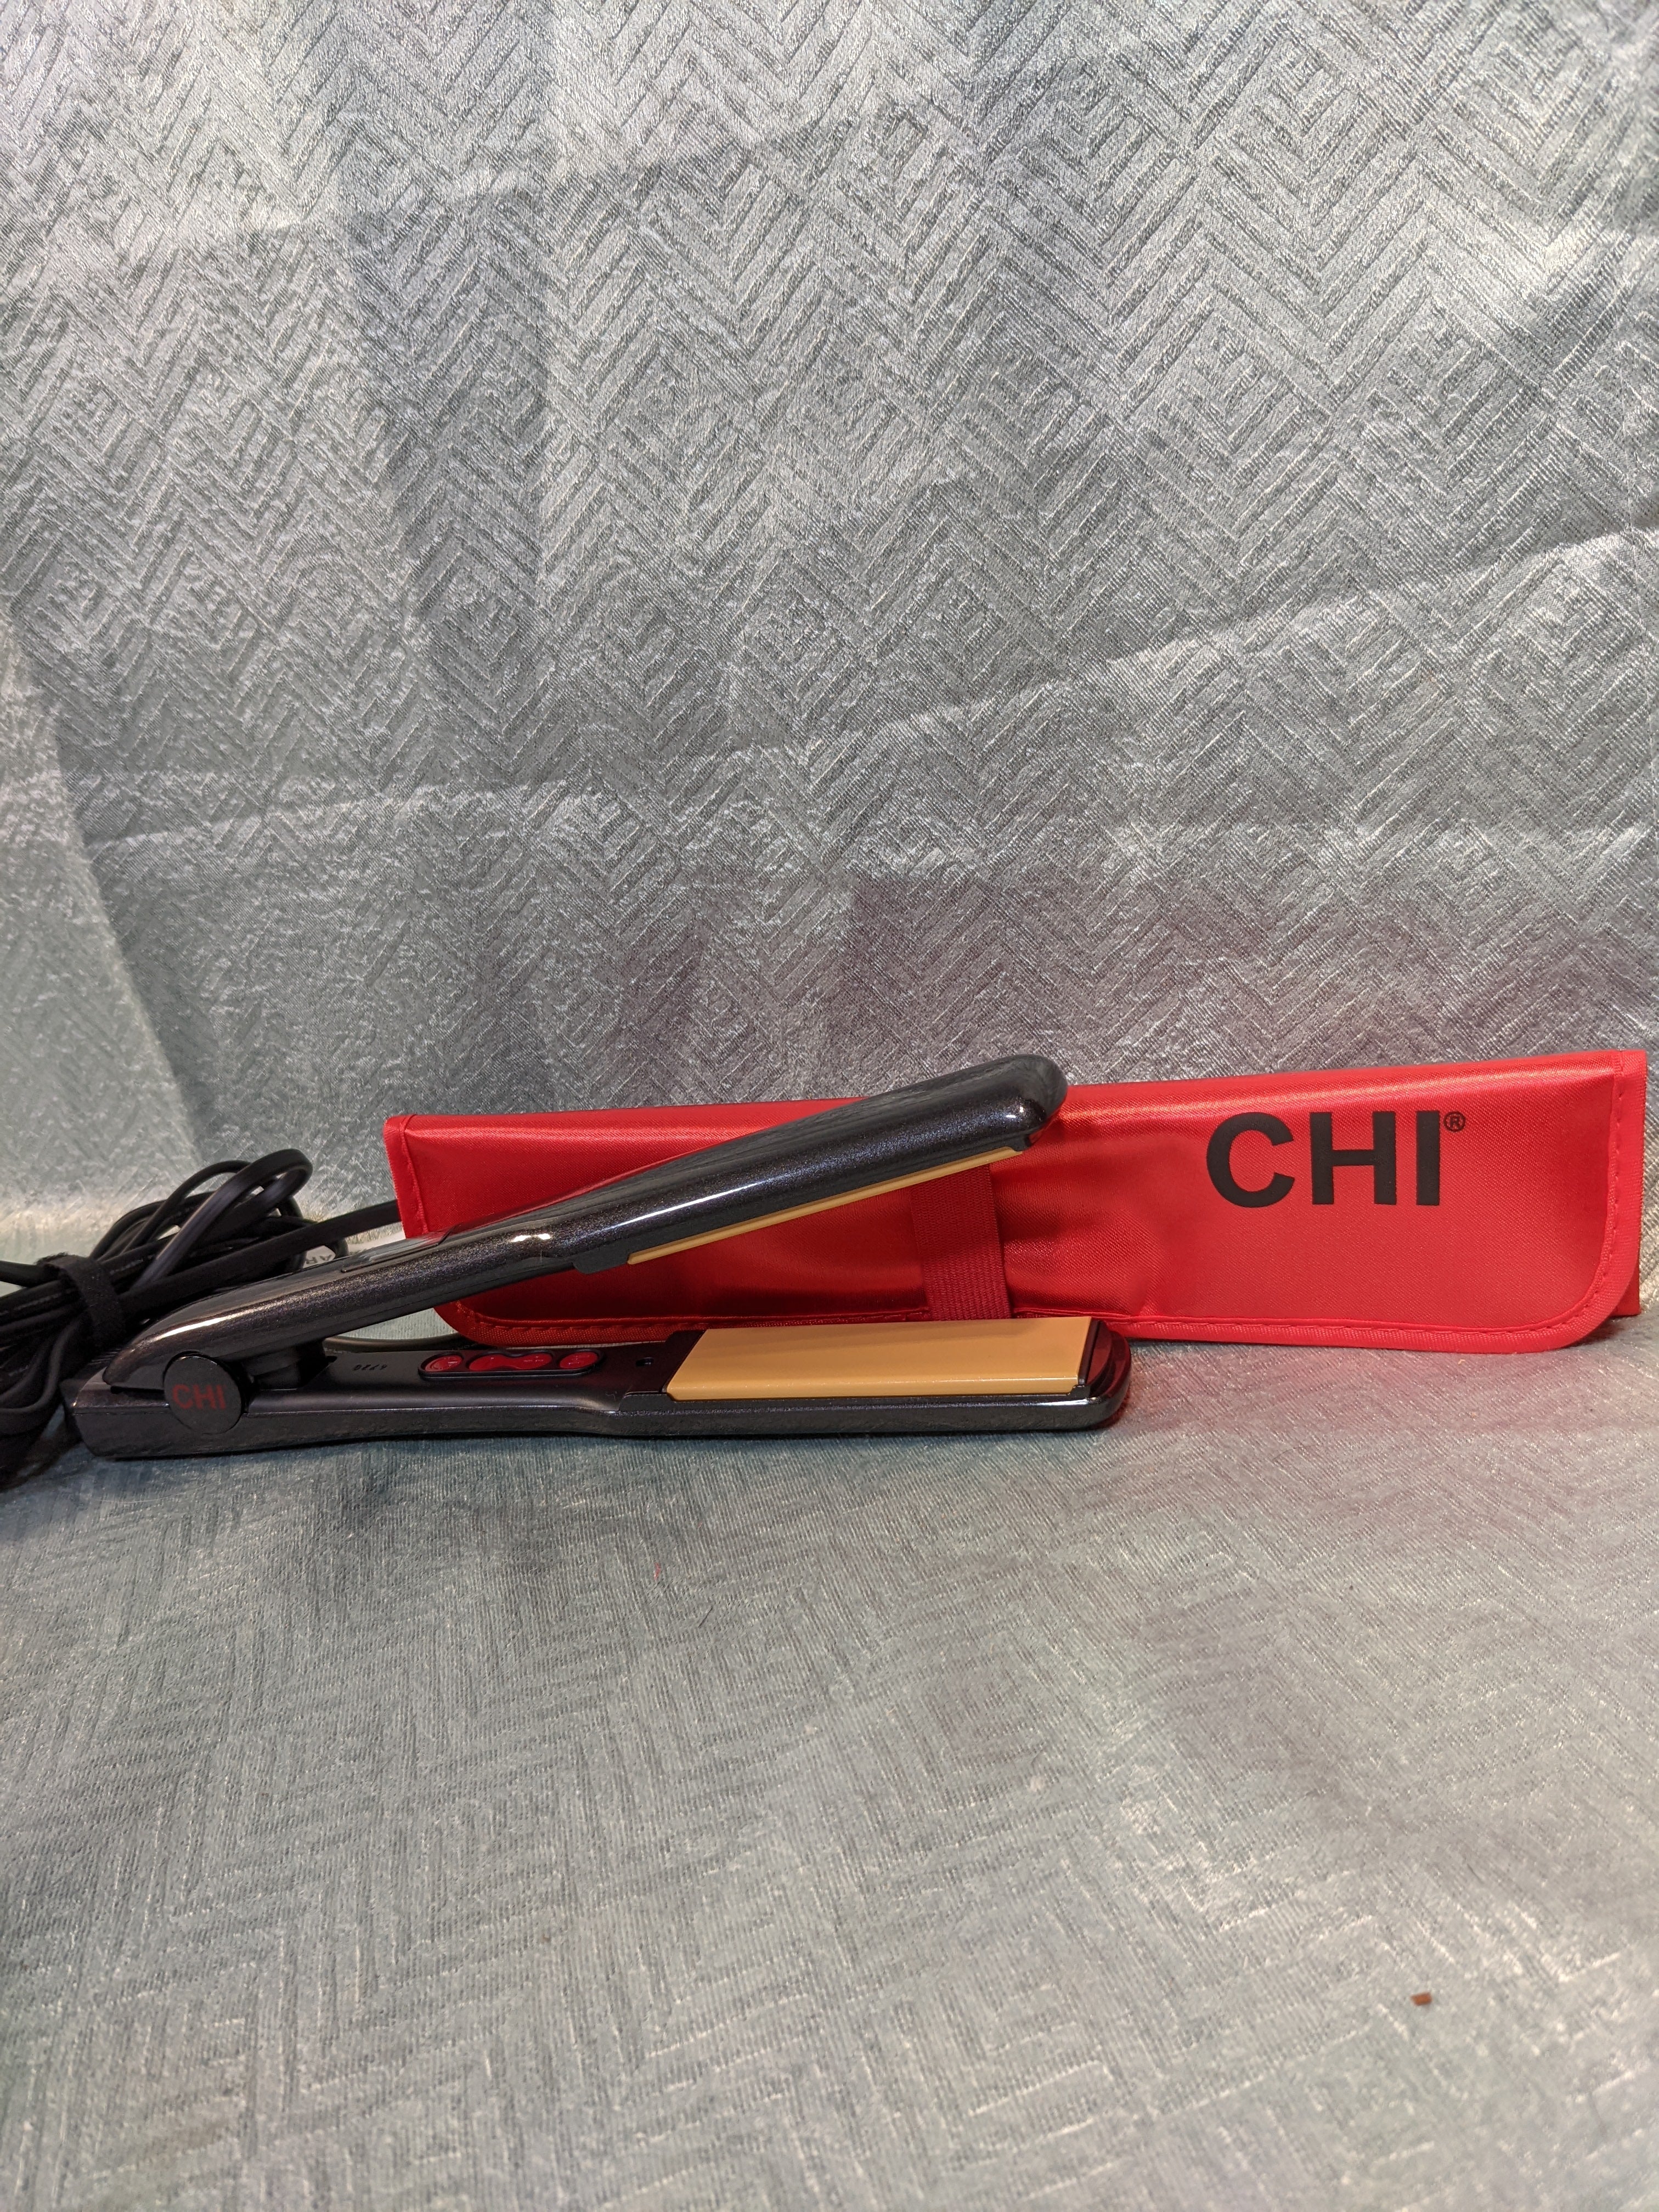 CHI G2 Professional Hair Straightener Titanium Infused Ceramic Plates Flat Iron | 1 1/4